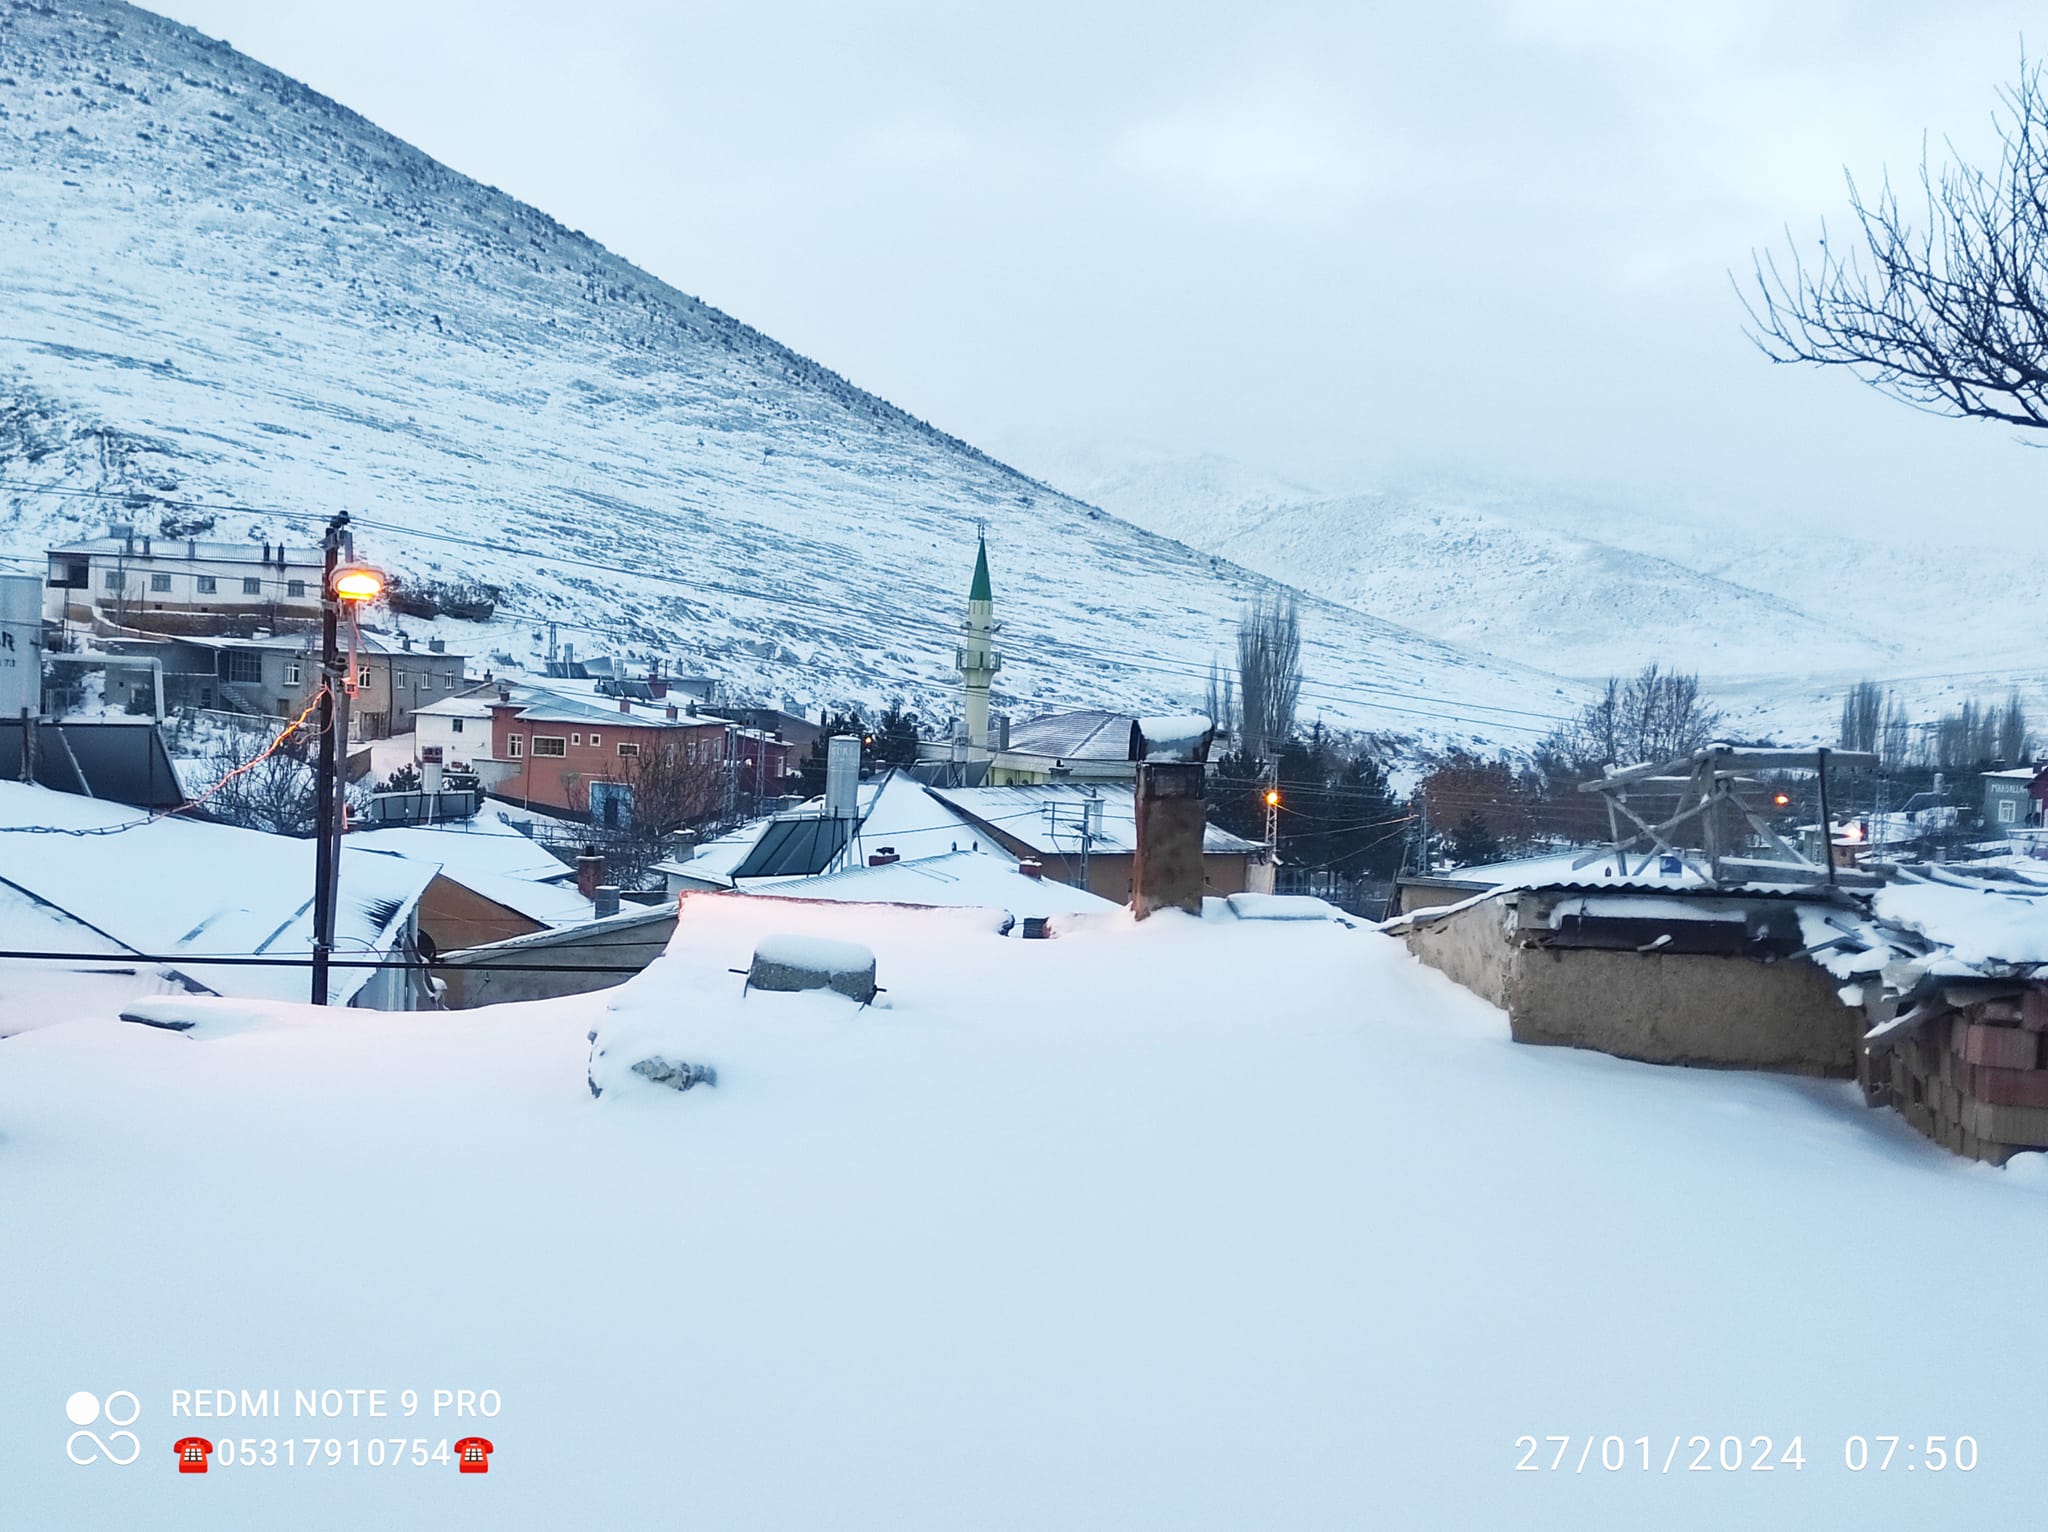 Meteoroloji İşleri'nin tahminlerine göre Konya'da Pazartesi ve Salı günleri aralıksız kar yağışı görülecek. Yayınlanan tahminlerde kar yağışı gece yarısından itibaren başlayacak ve Salı günü de sürecek.